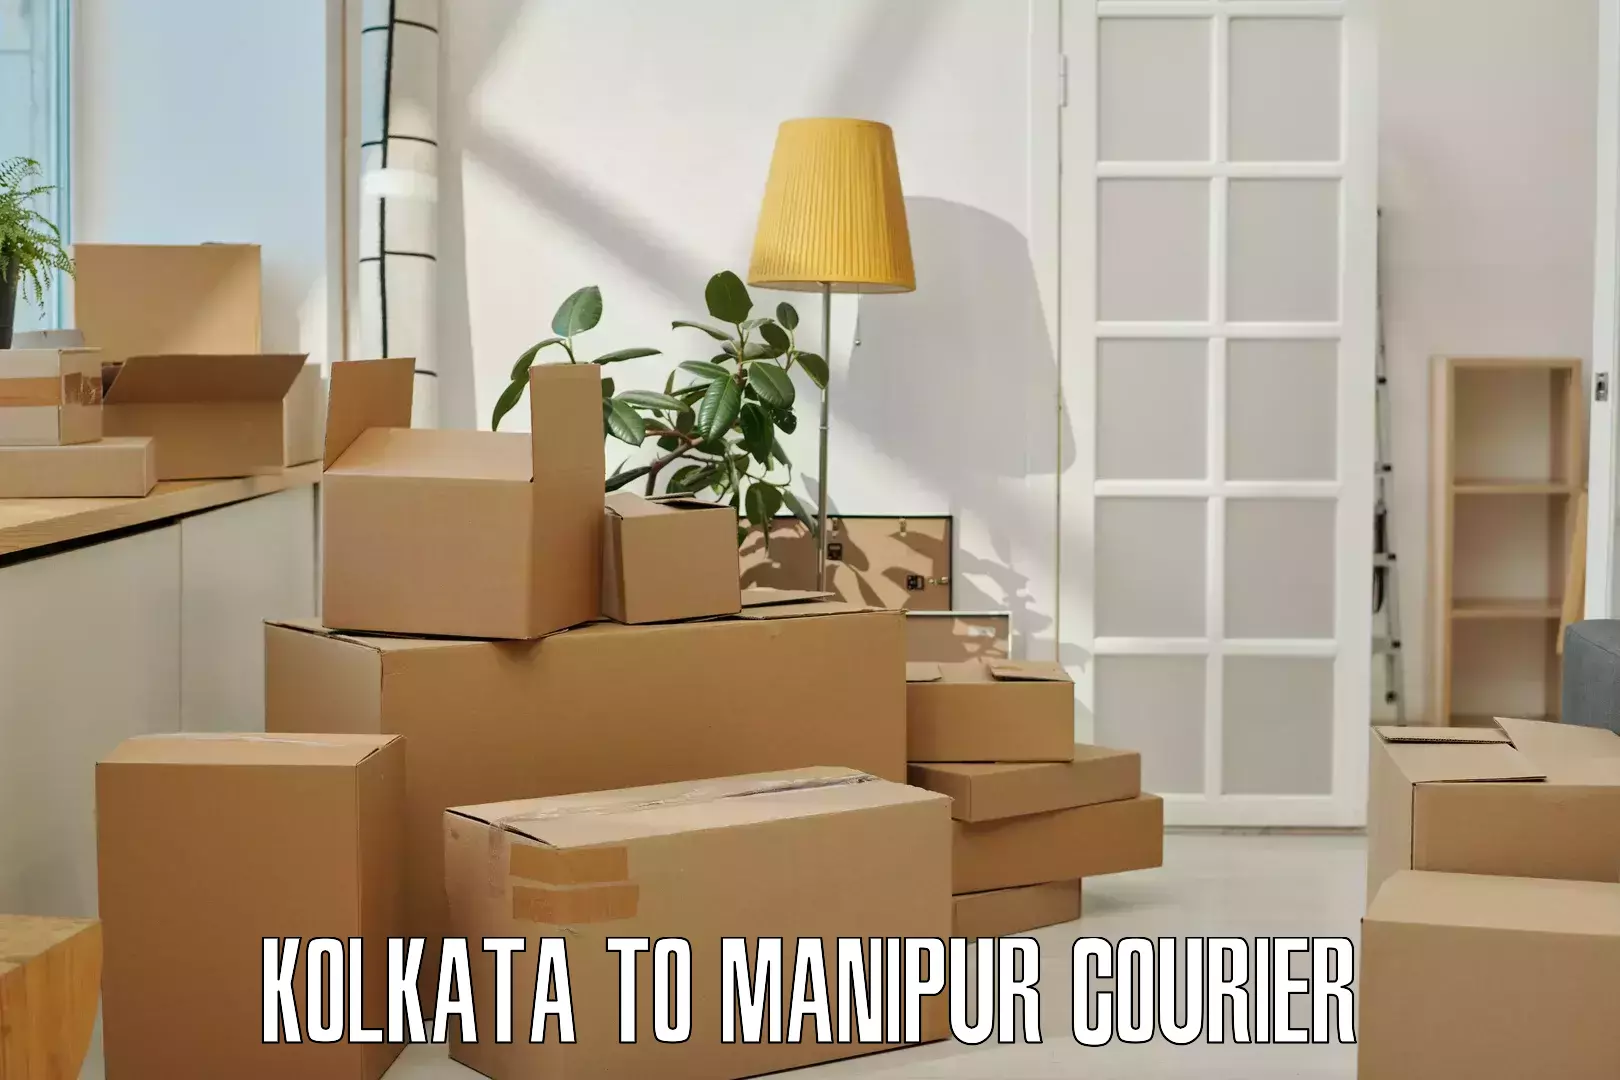 Automated shipping processes Kolkata to Ukhrul